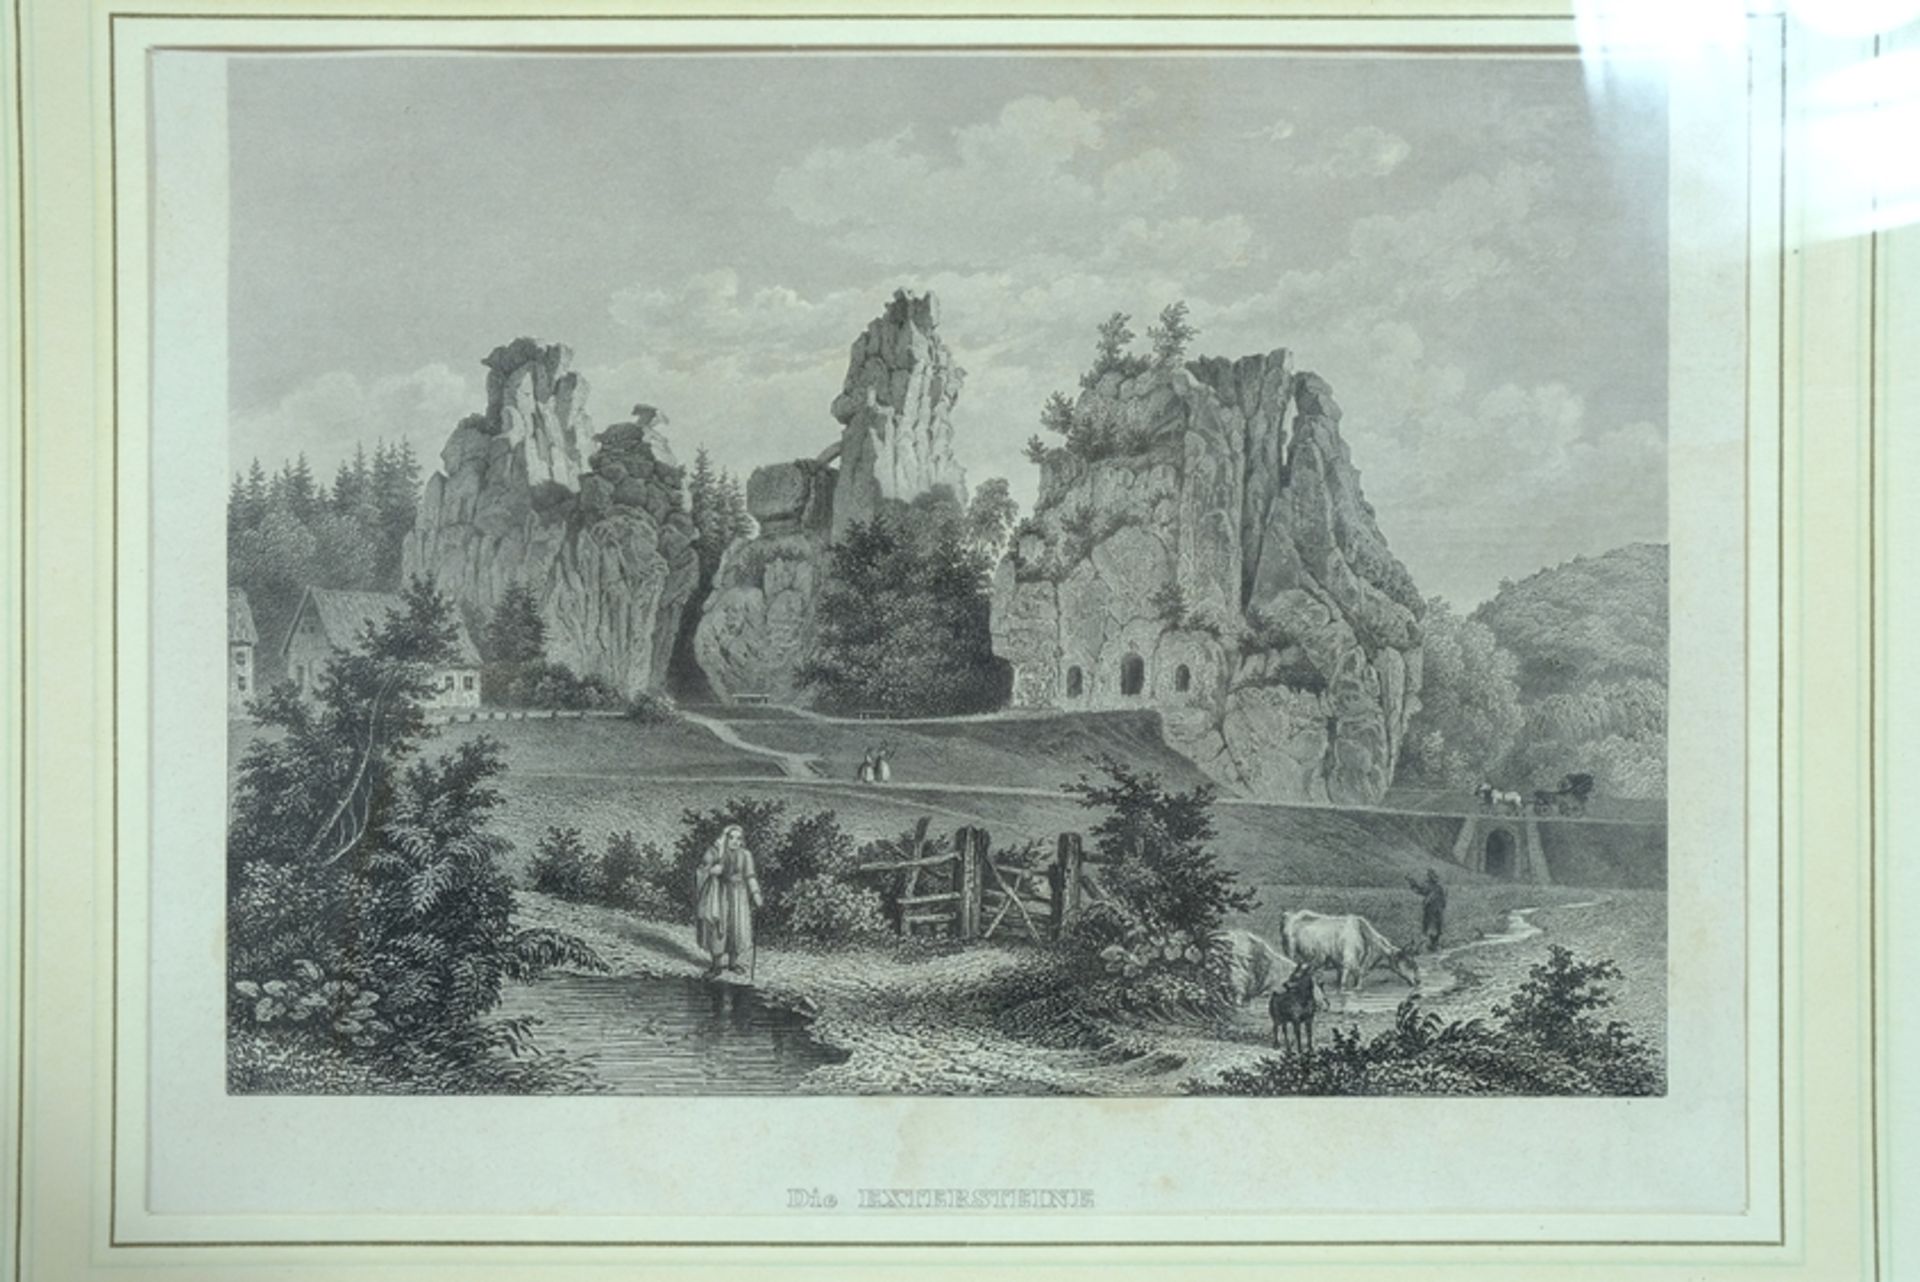 EXTERNSTEINE "Die Extersteine" im Teutoburger Wald, Stahlstich, 1862. DP 11,5 x 16cm, PP, R 26 x 32